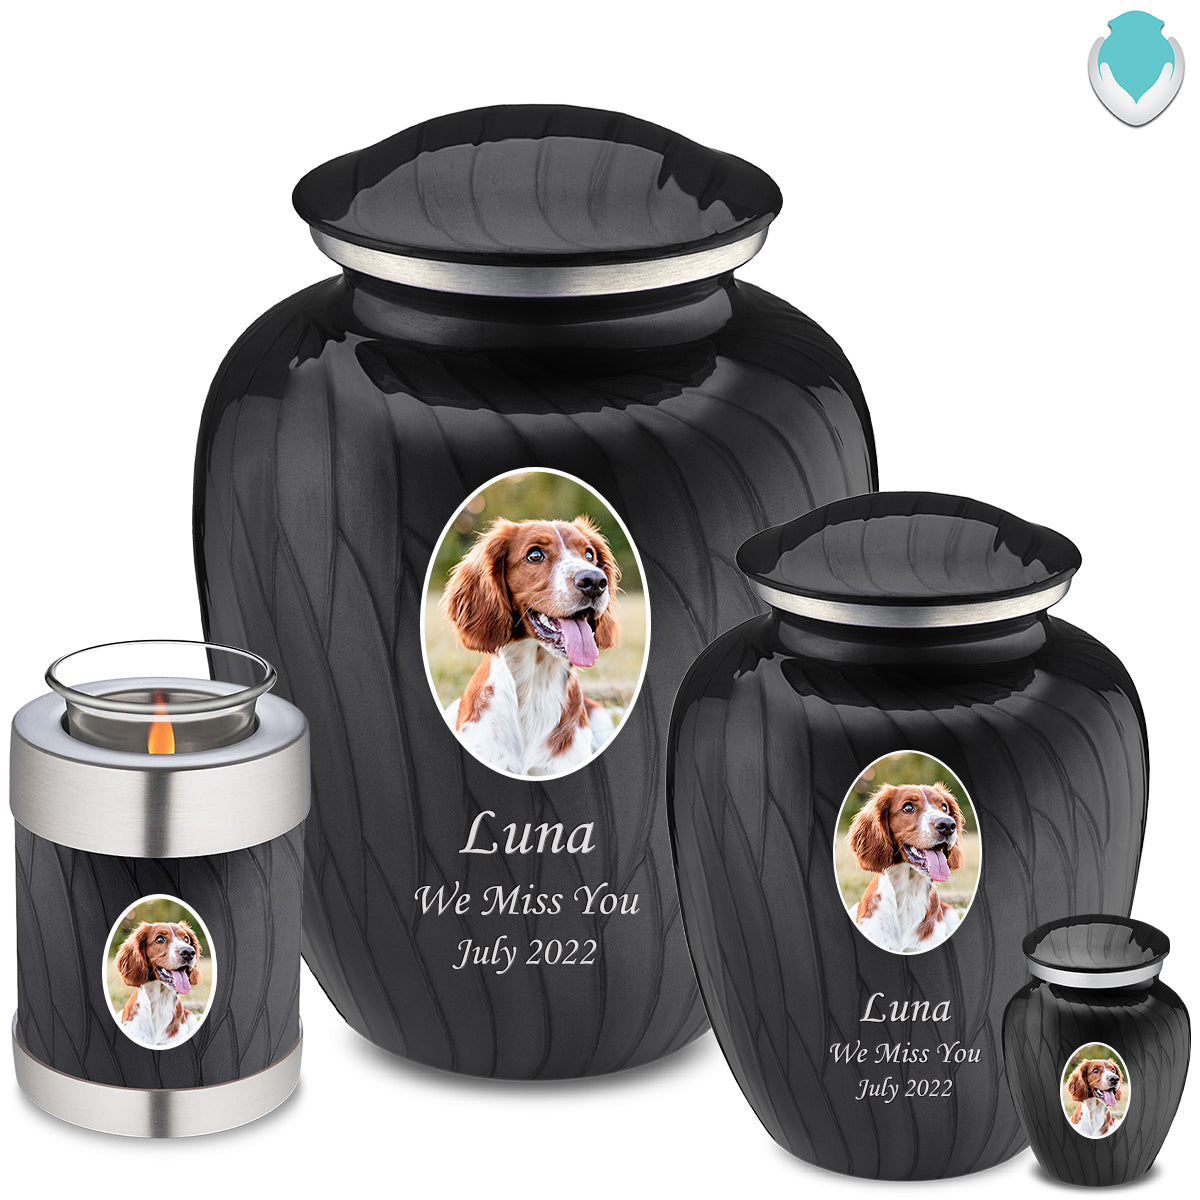 Adult Pet Embrace Pearl Black Portrait Cremation Urn